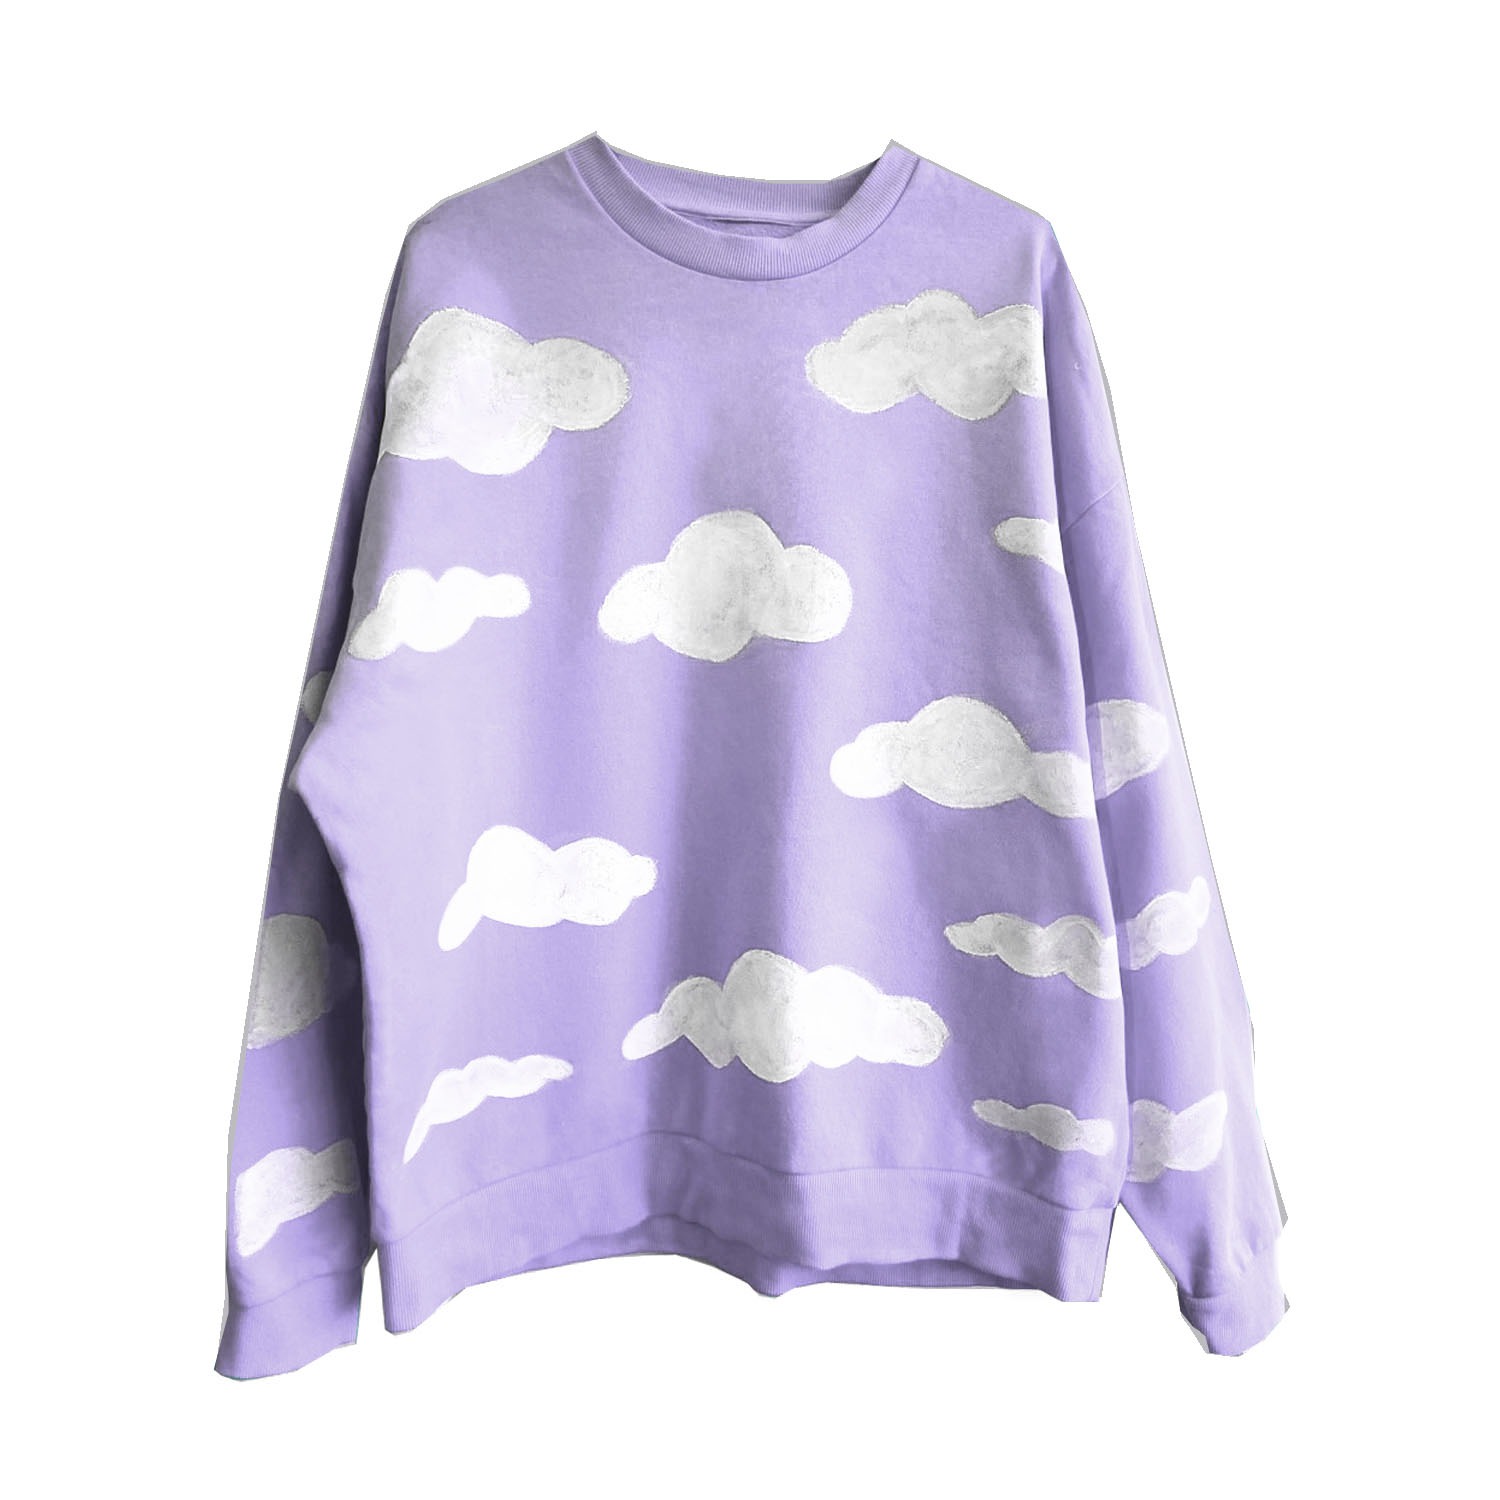 Quillattire Women's Cloud Relaxed T-Shirt